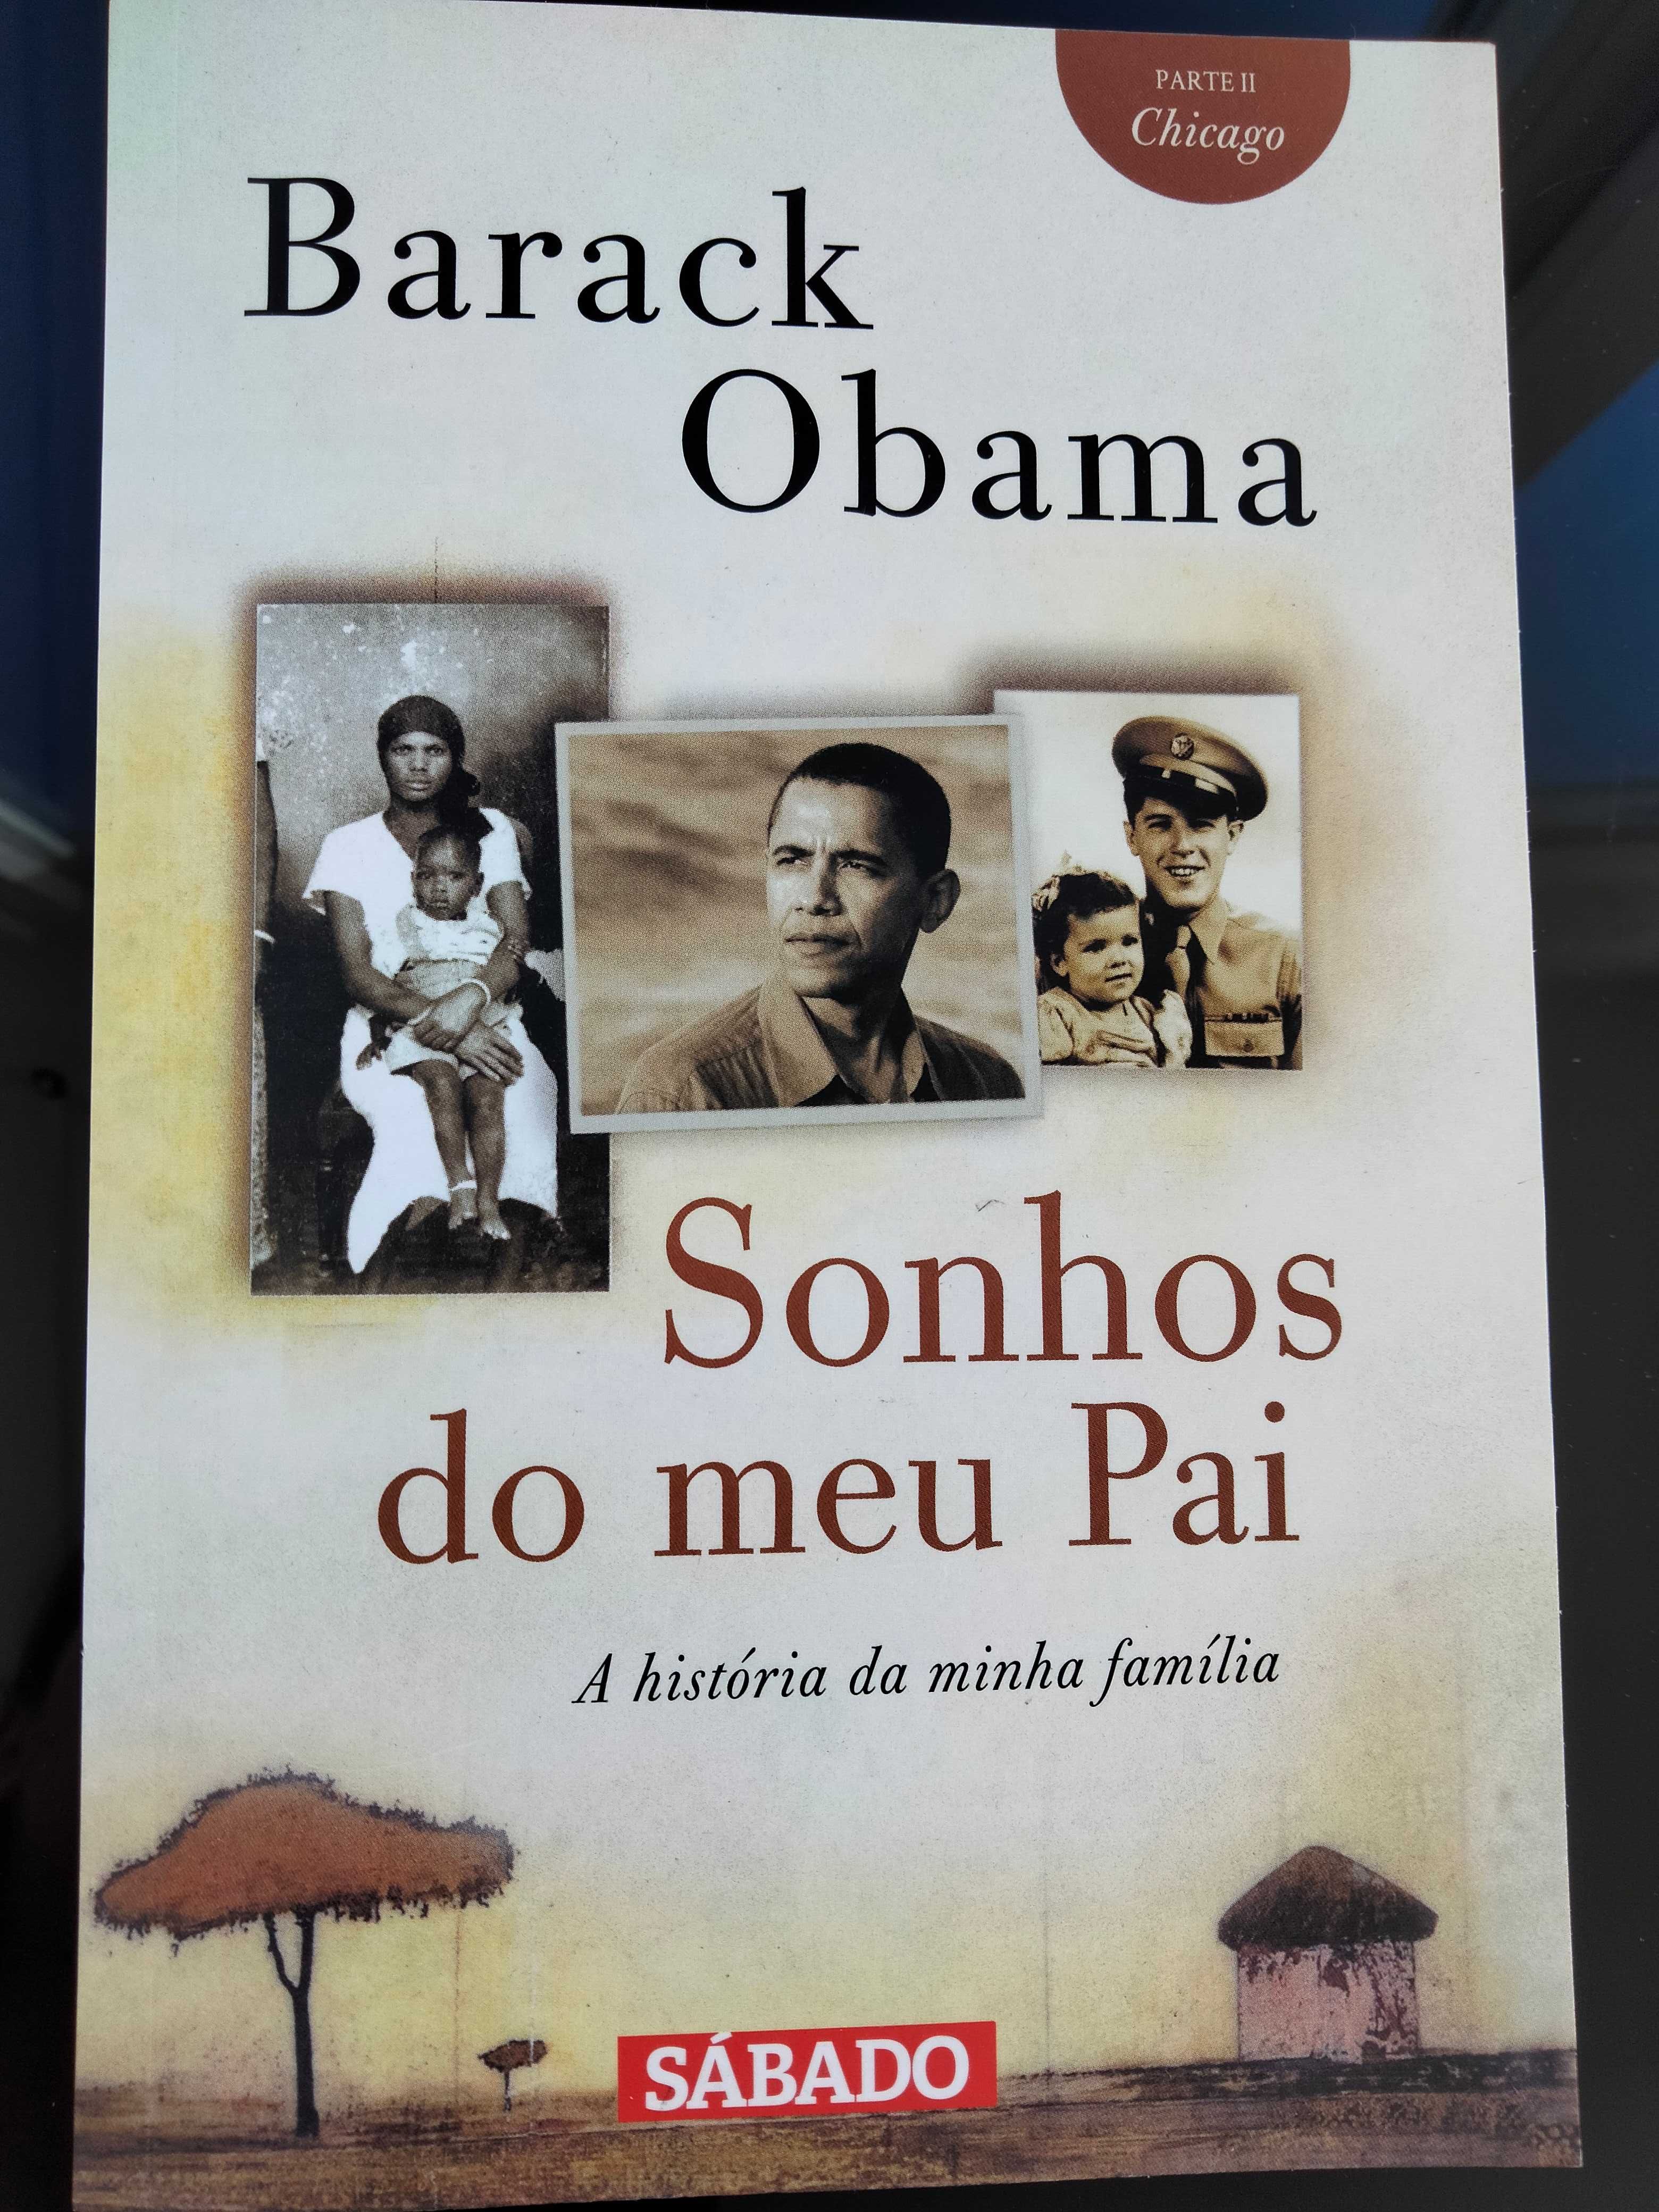 Barack Obama "Sonhos do meu pai"